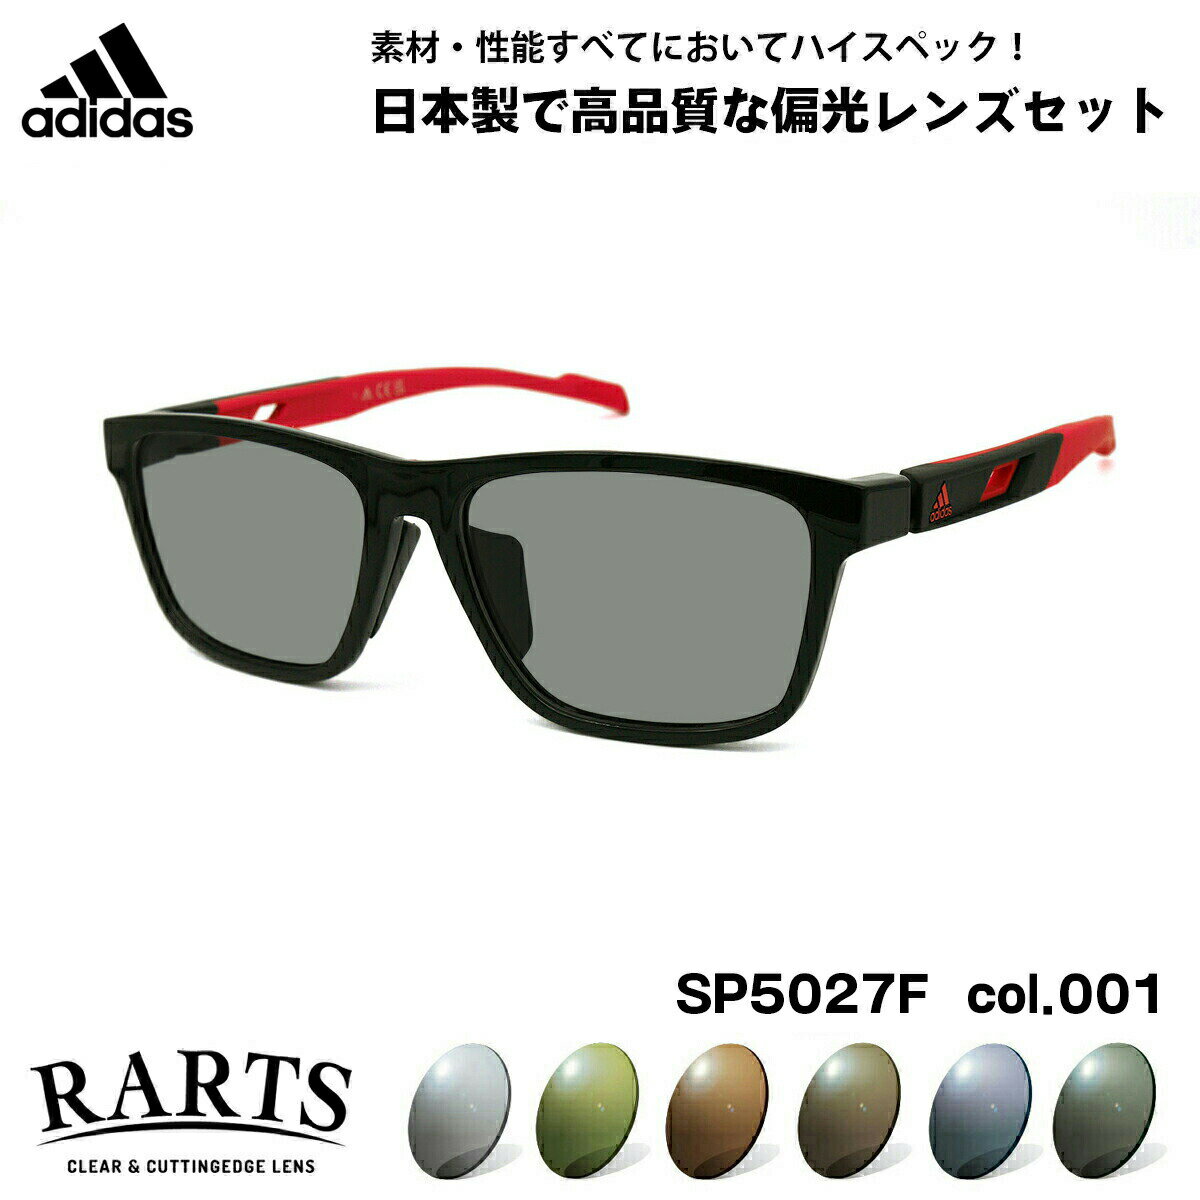 アディダス 偏光 サングラス RARTS SP5027F (SP5027F/V) col.001 56mm adidas アジアンフィット アーツ UVカット